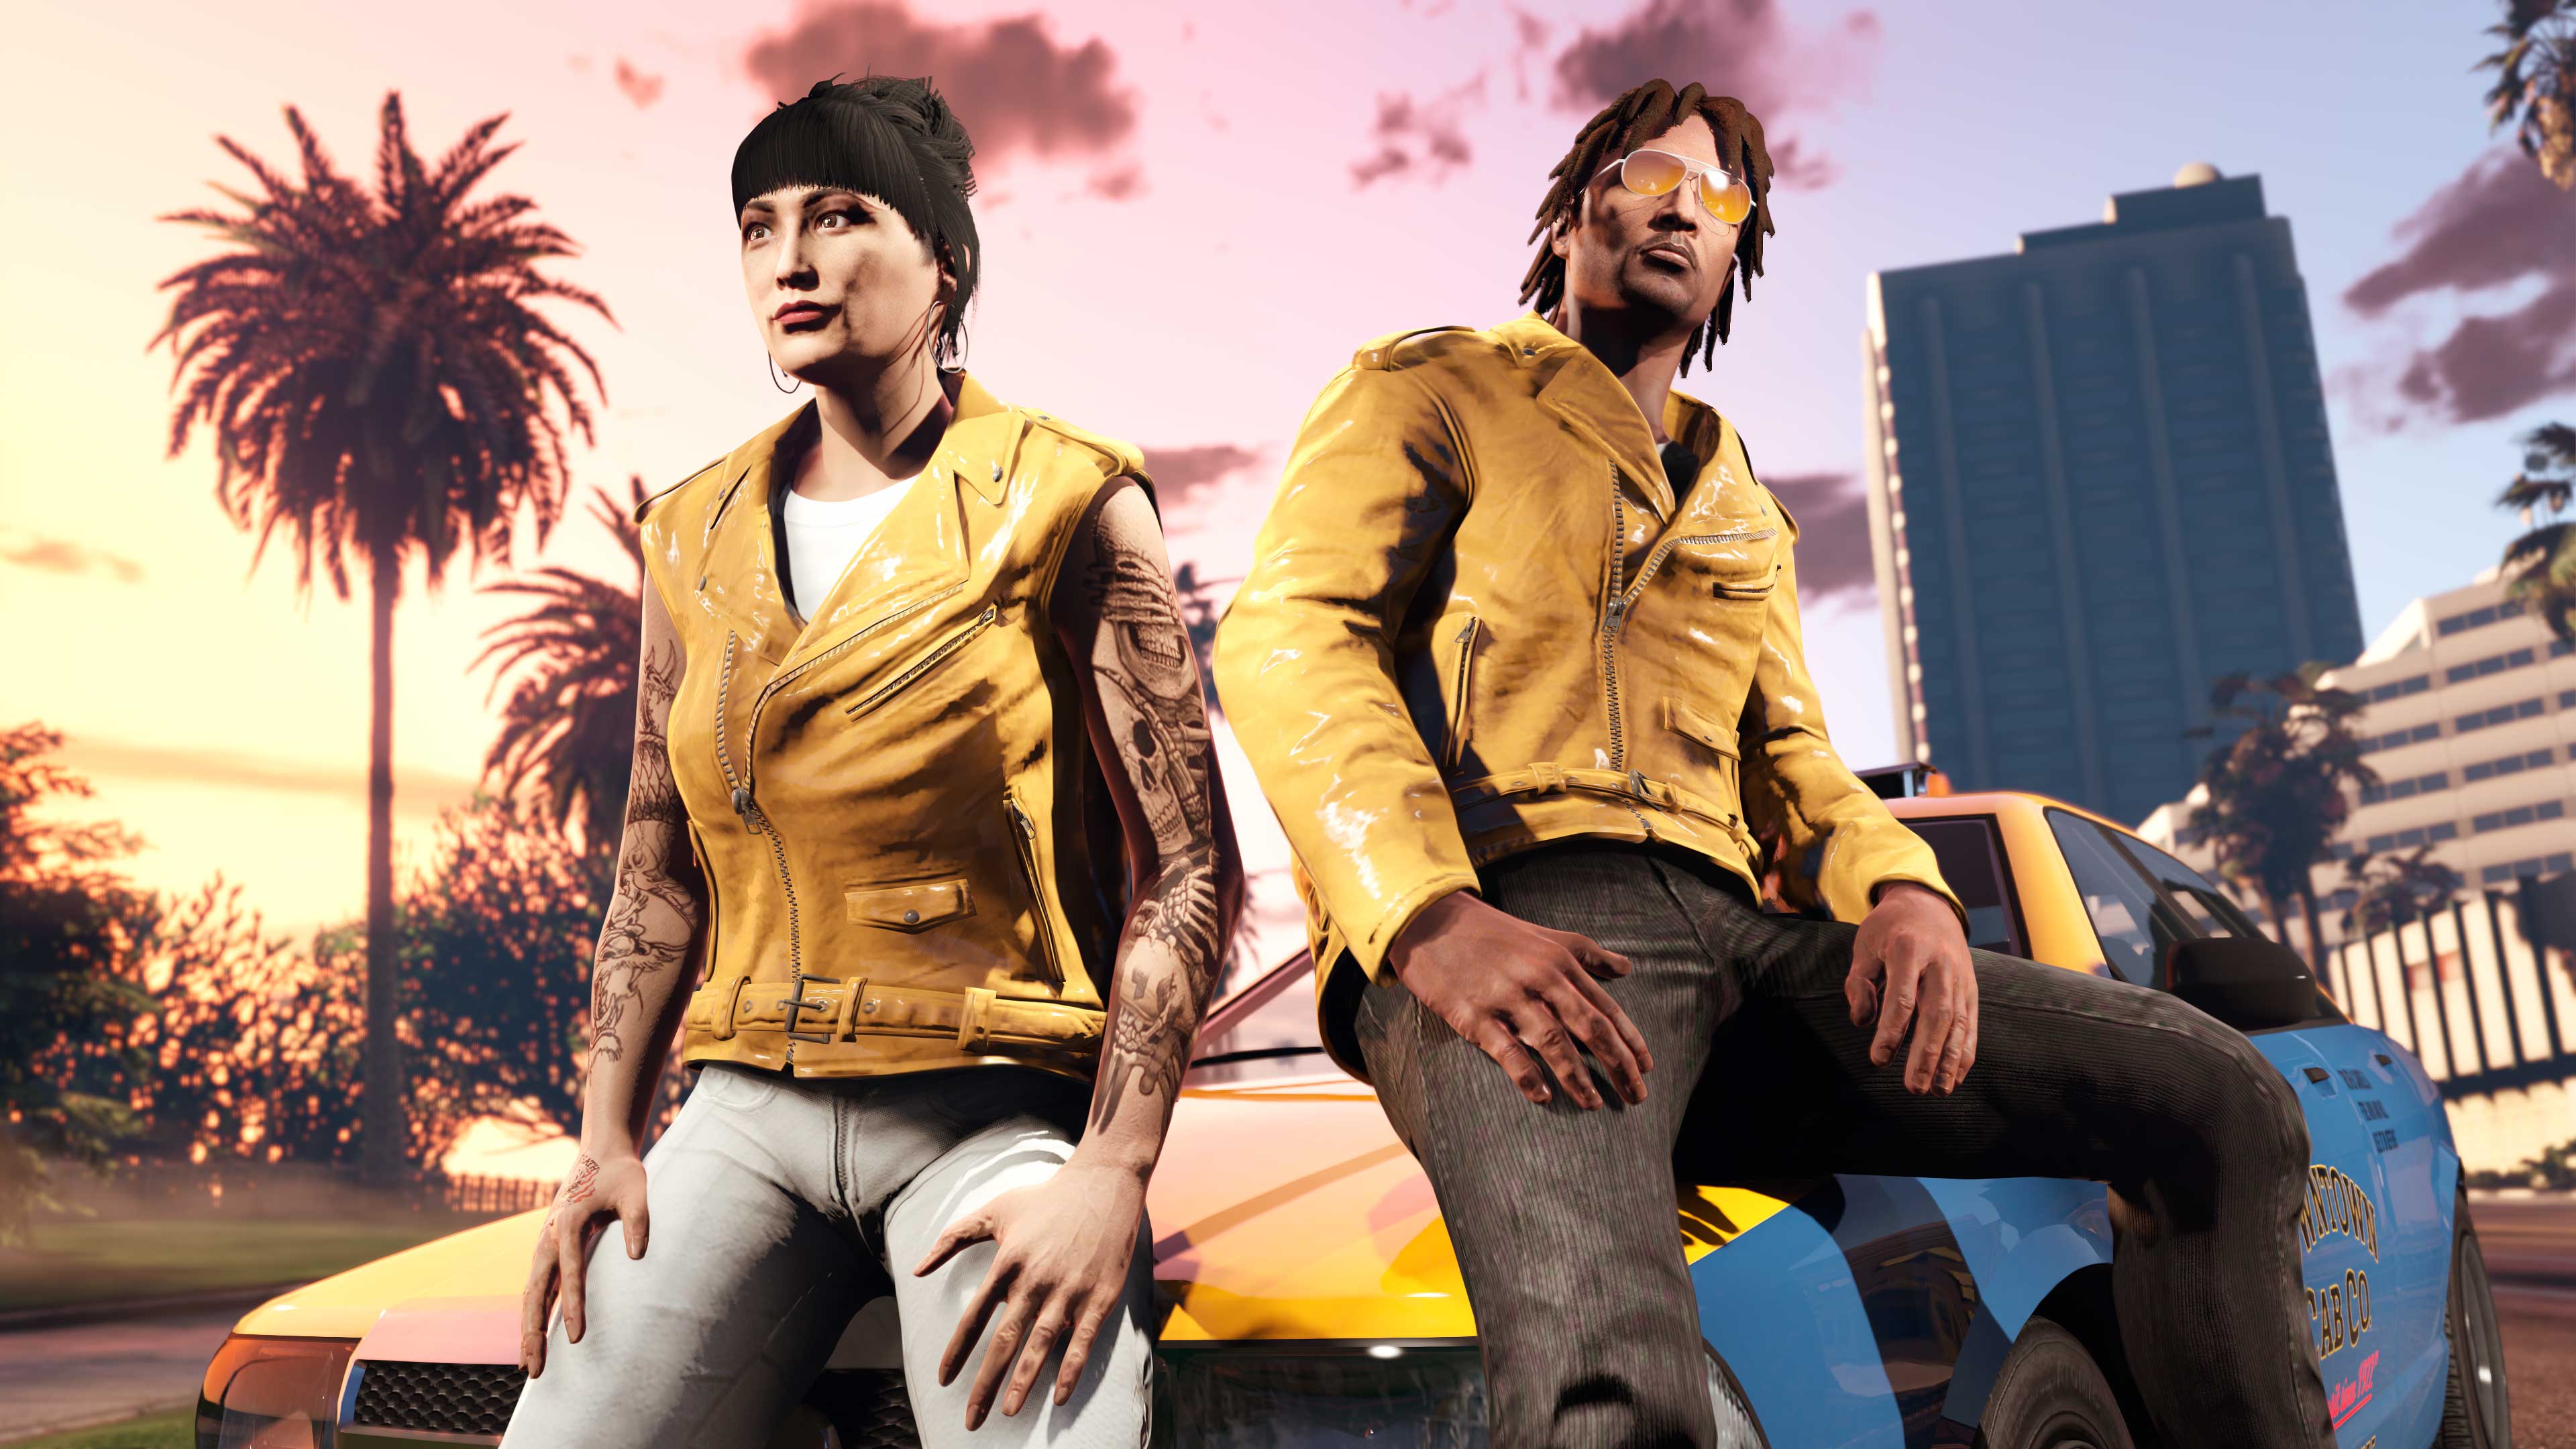 Immagine di personaggi di GTA Online con indosso la giacca In vinile senape e la giacca Smanicata in vinile senape